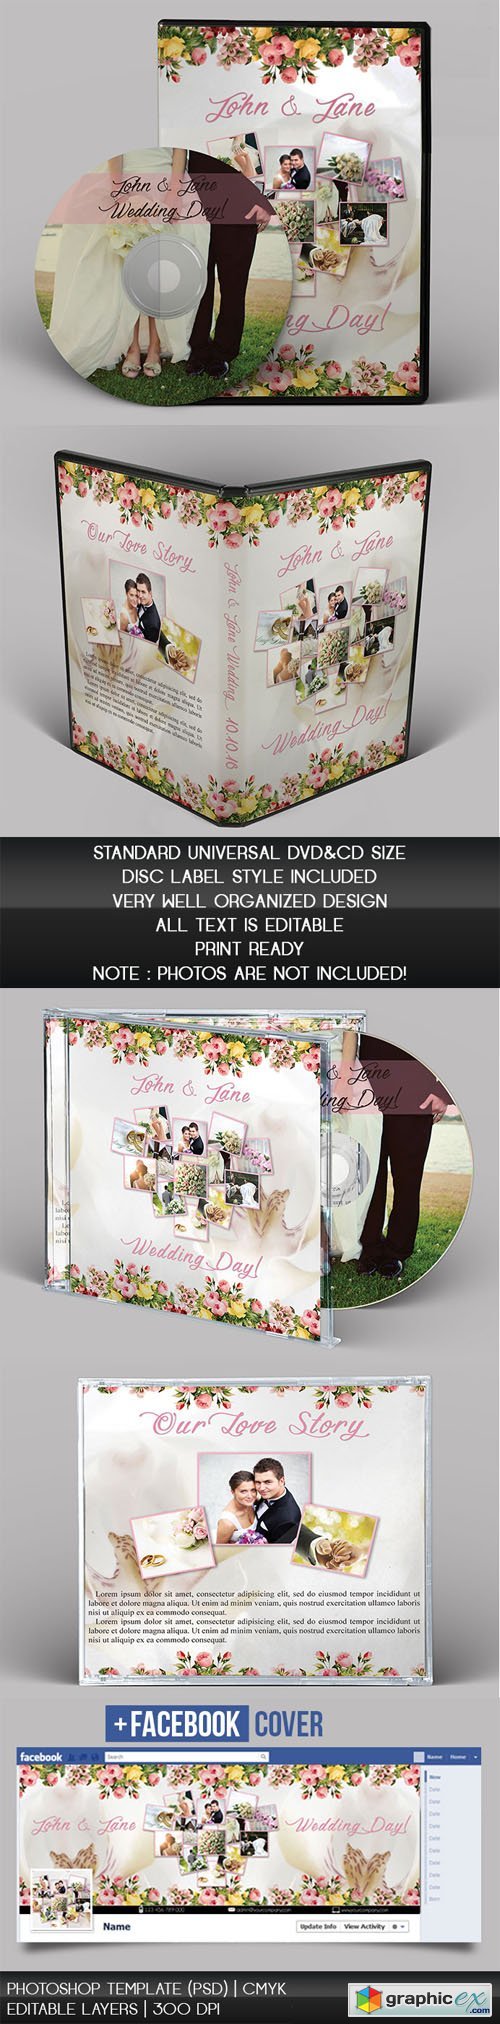 Wedding CD/DVD Cover - PSD Brochure Templates (+ Facebook Cover)